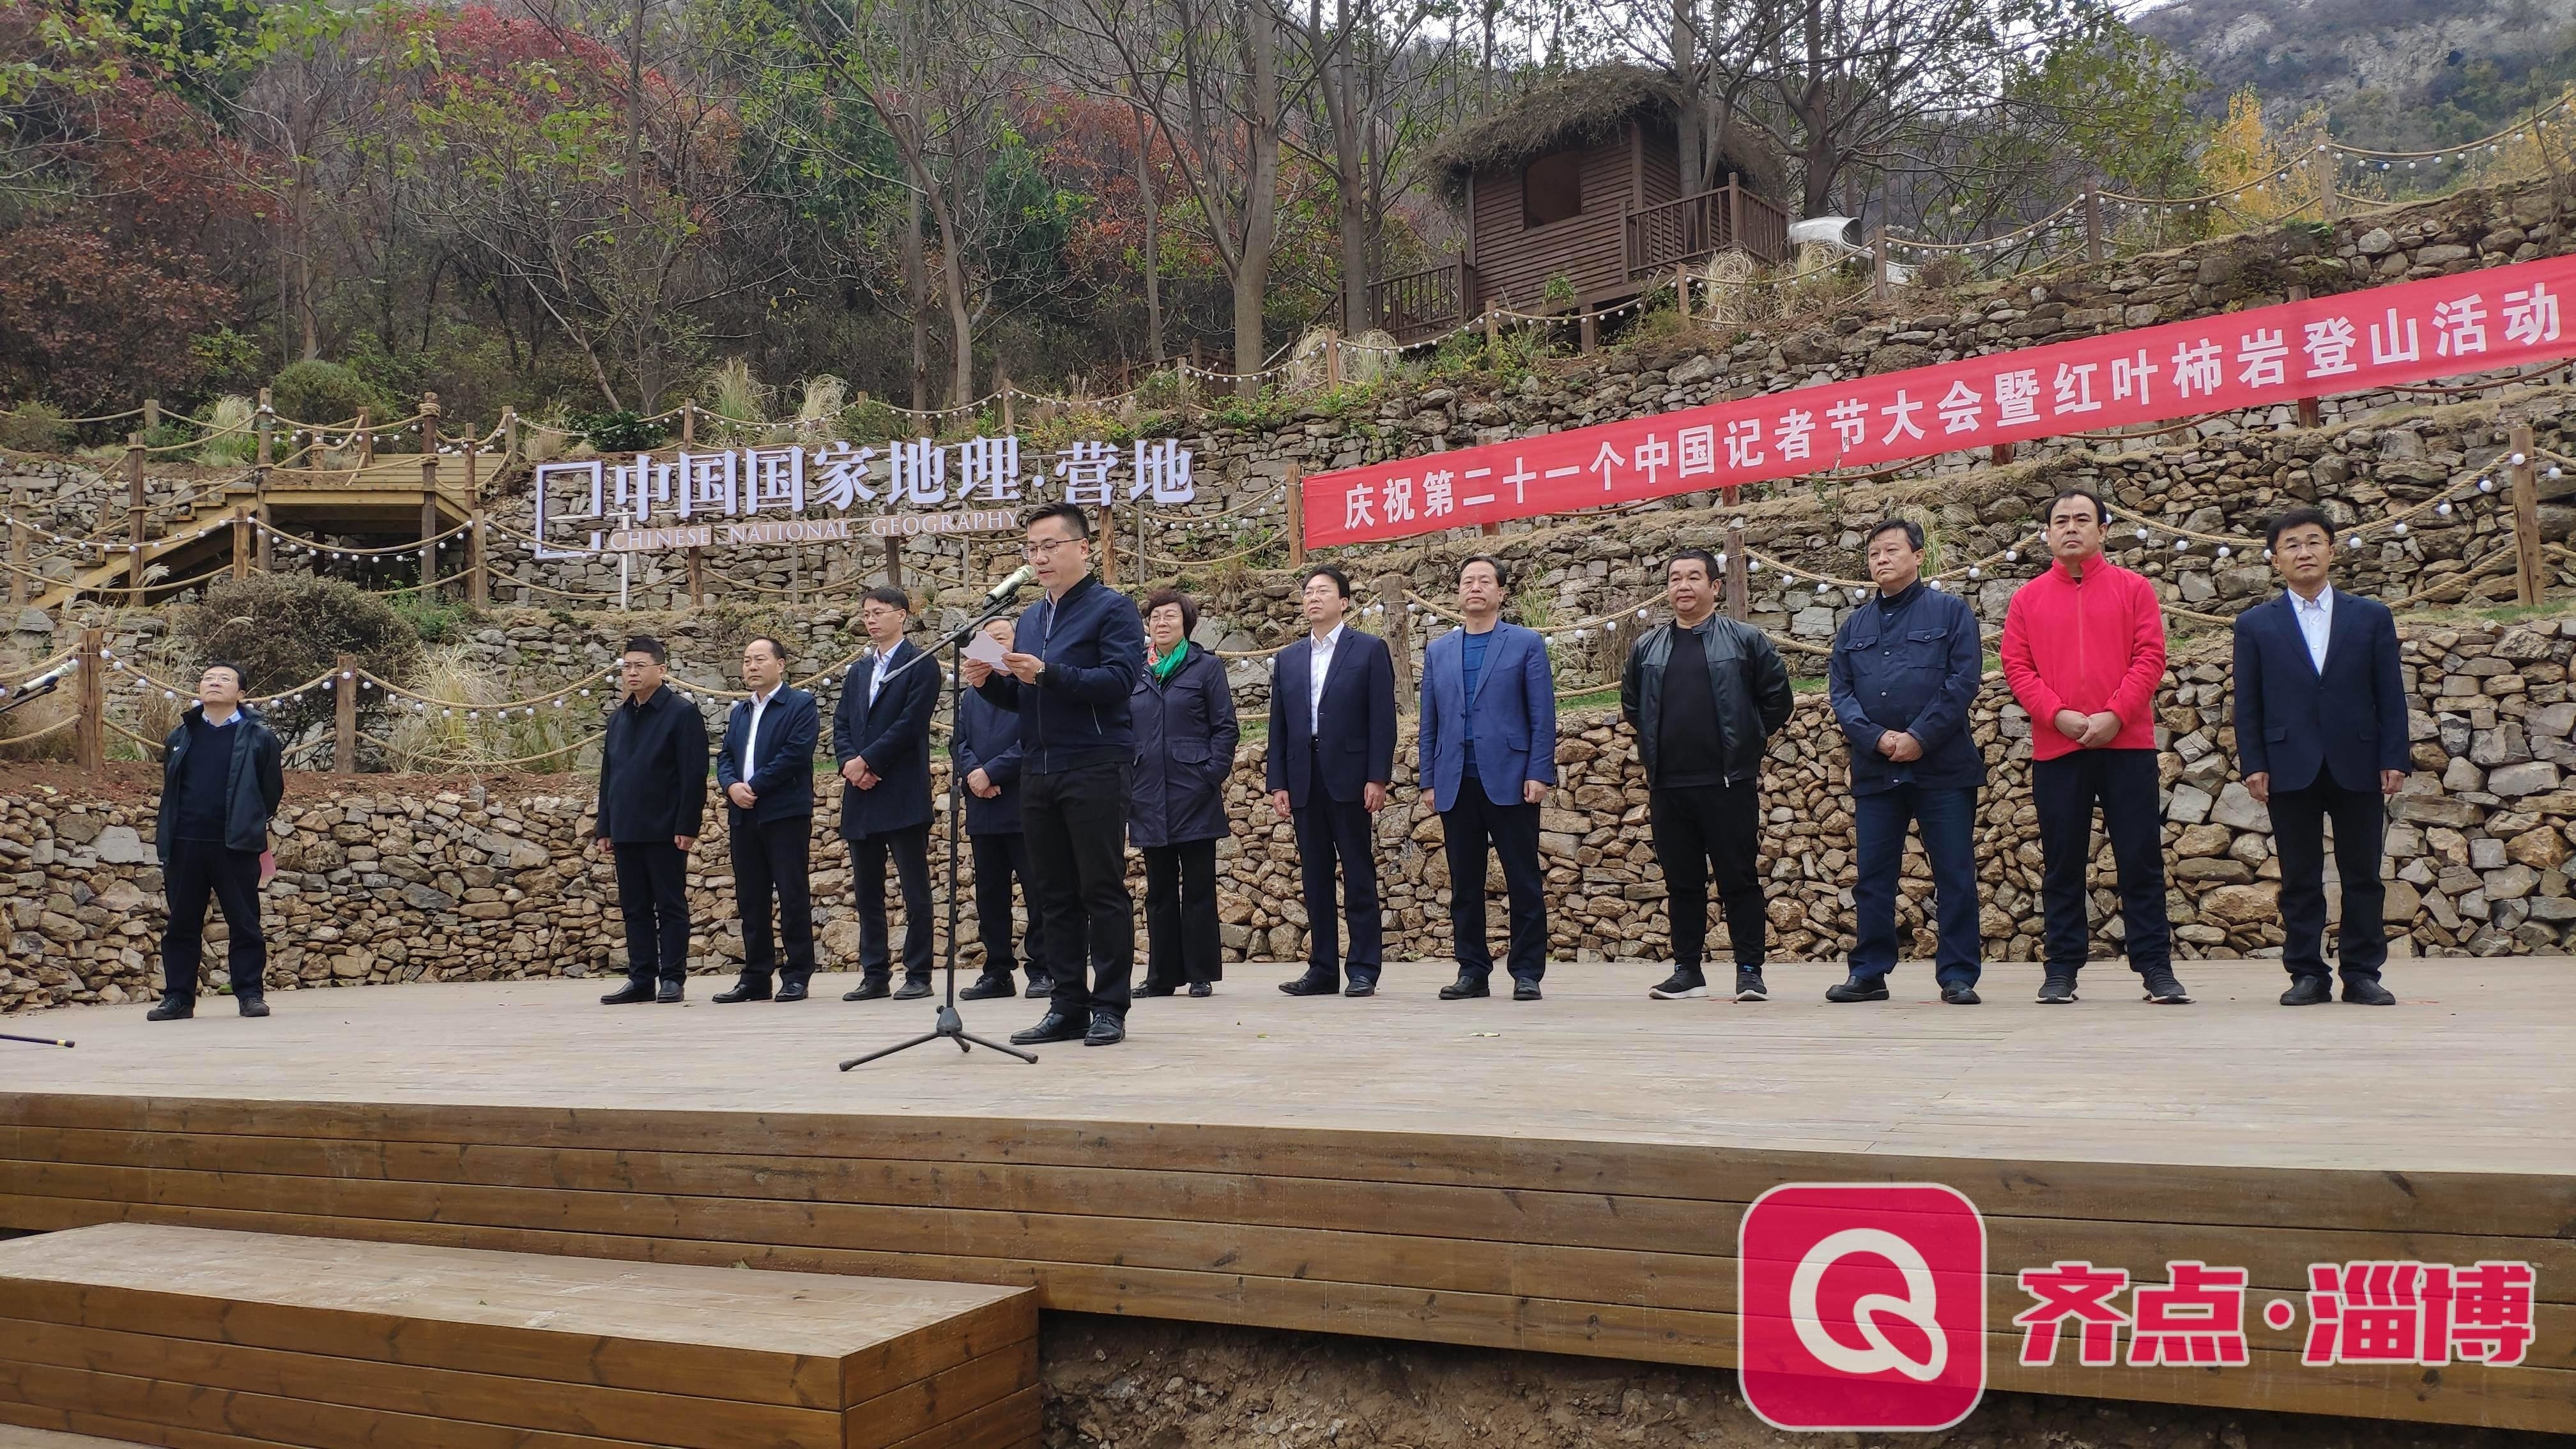 快讯 | 淄博市庆祝第二十一个中国记者节大会暨红叶柿岩登山活动启动